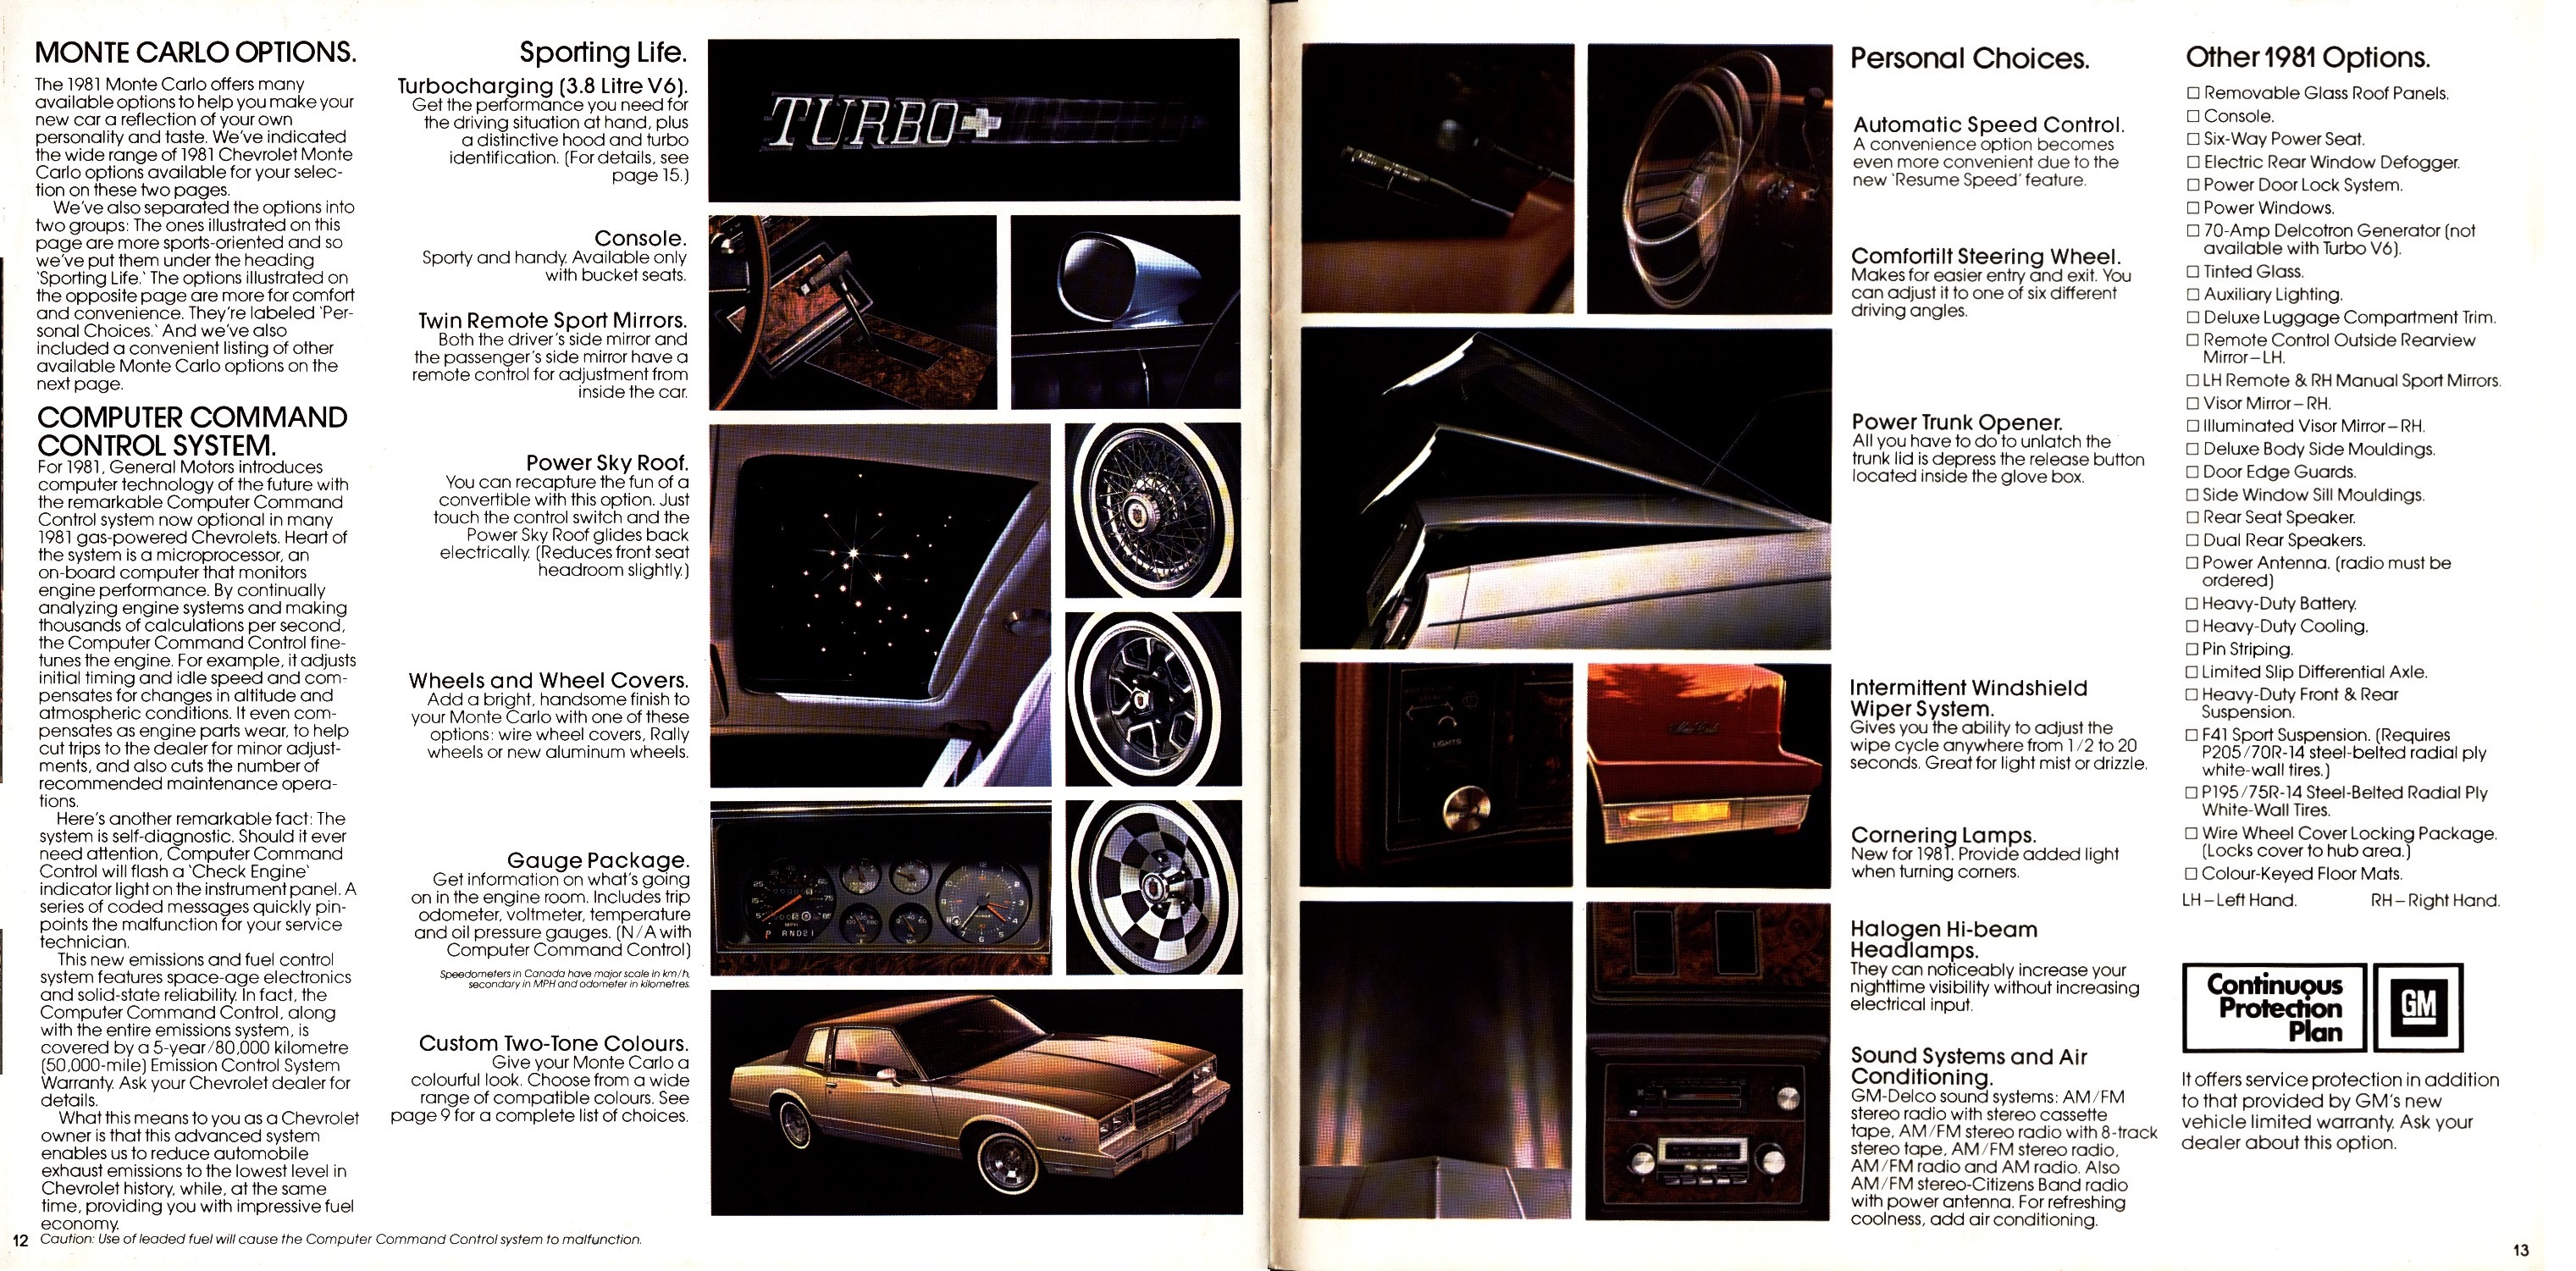 1981 Chevrolet Monte Carlo Brochure Canada 12-13